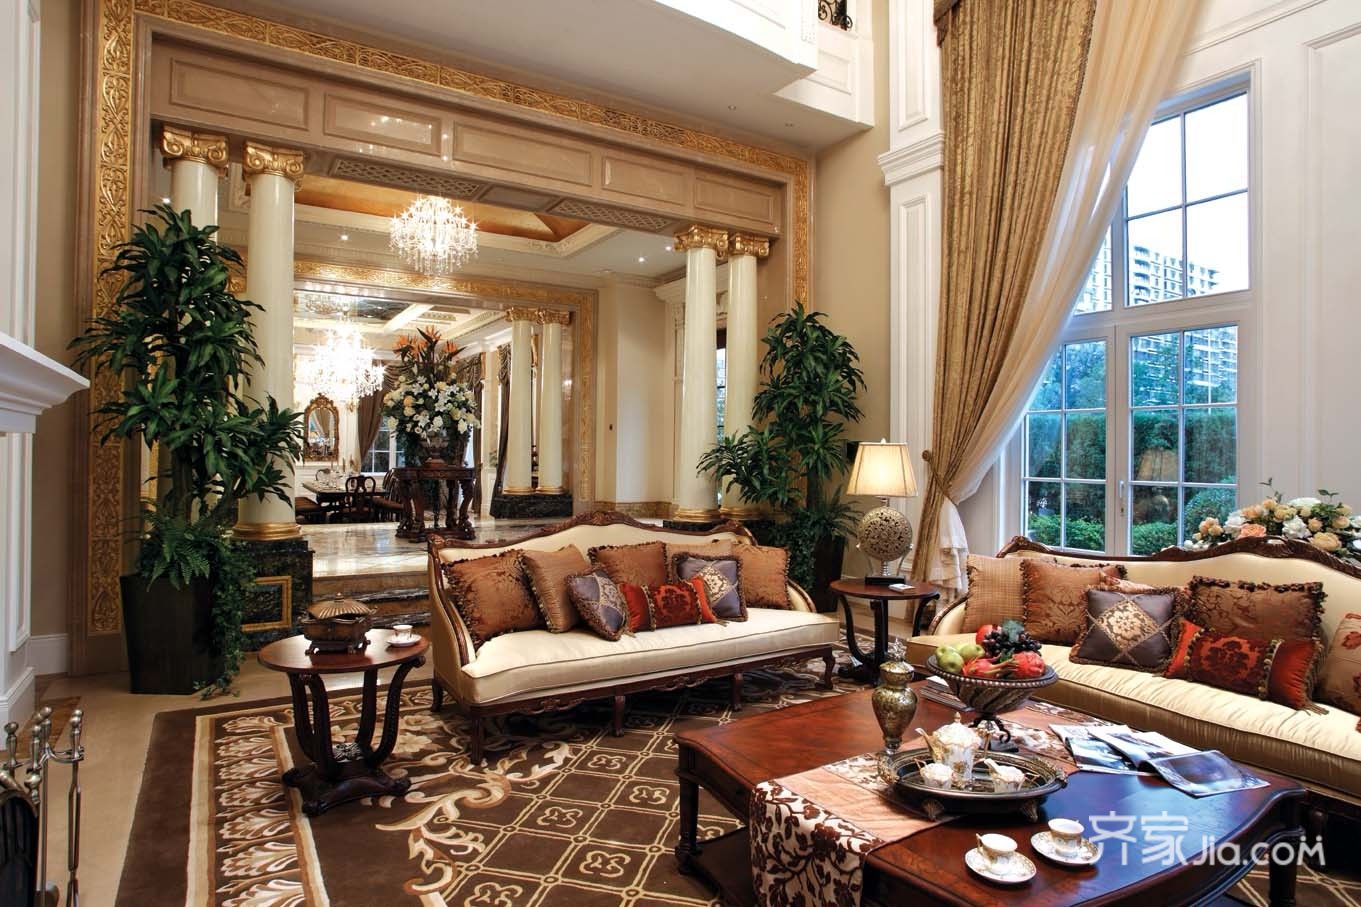 豪华型装修,别墅装修,140平米以上装修,美式风格,客厅,暖色调,窗帘,沙发